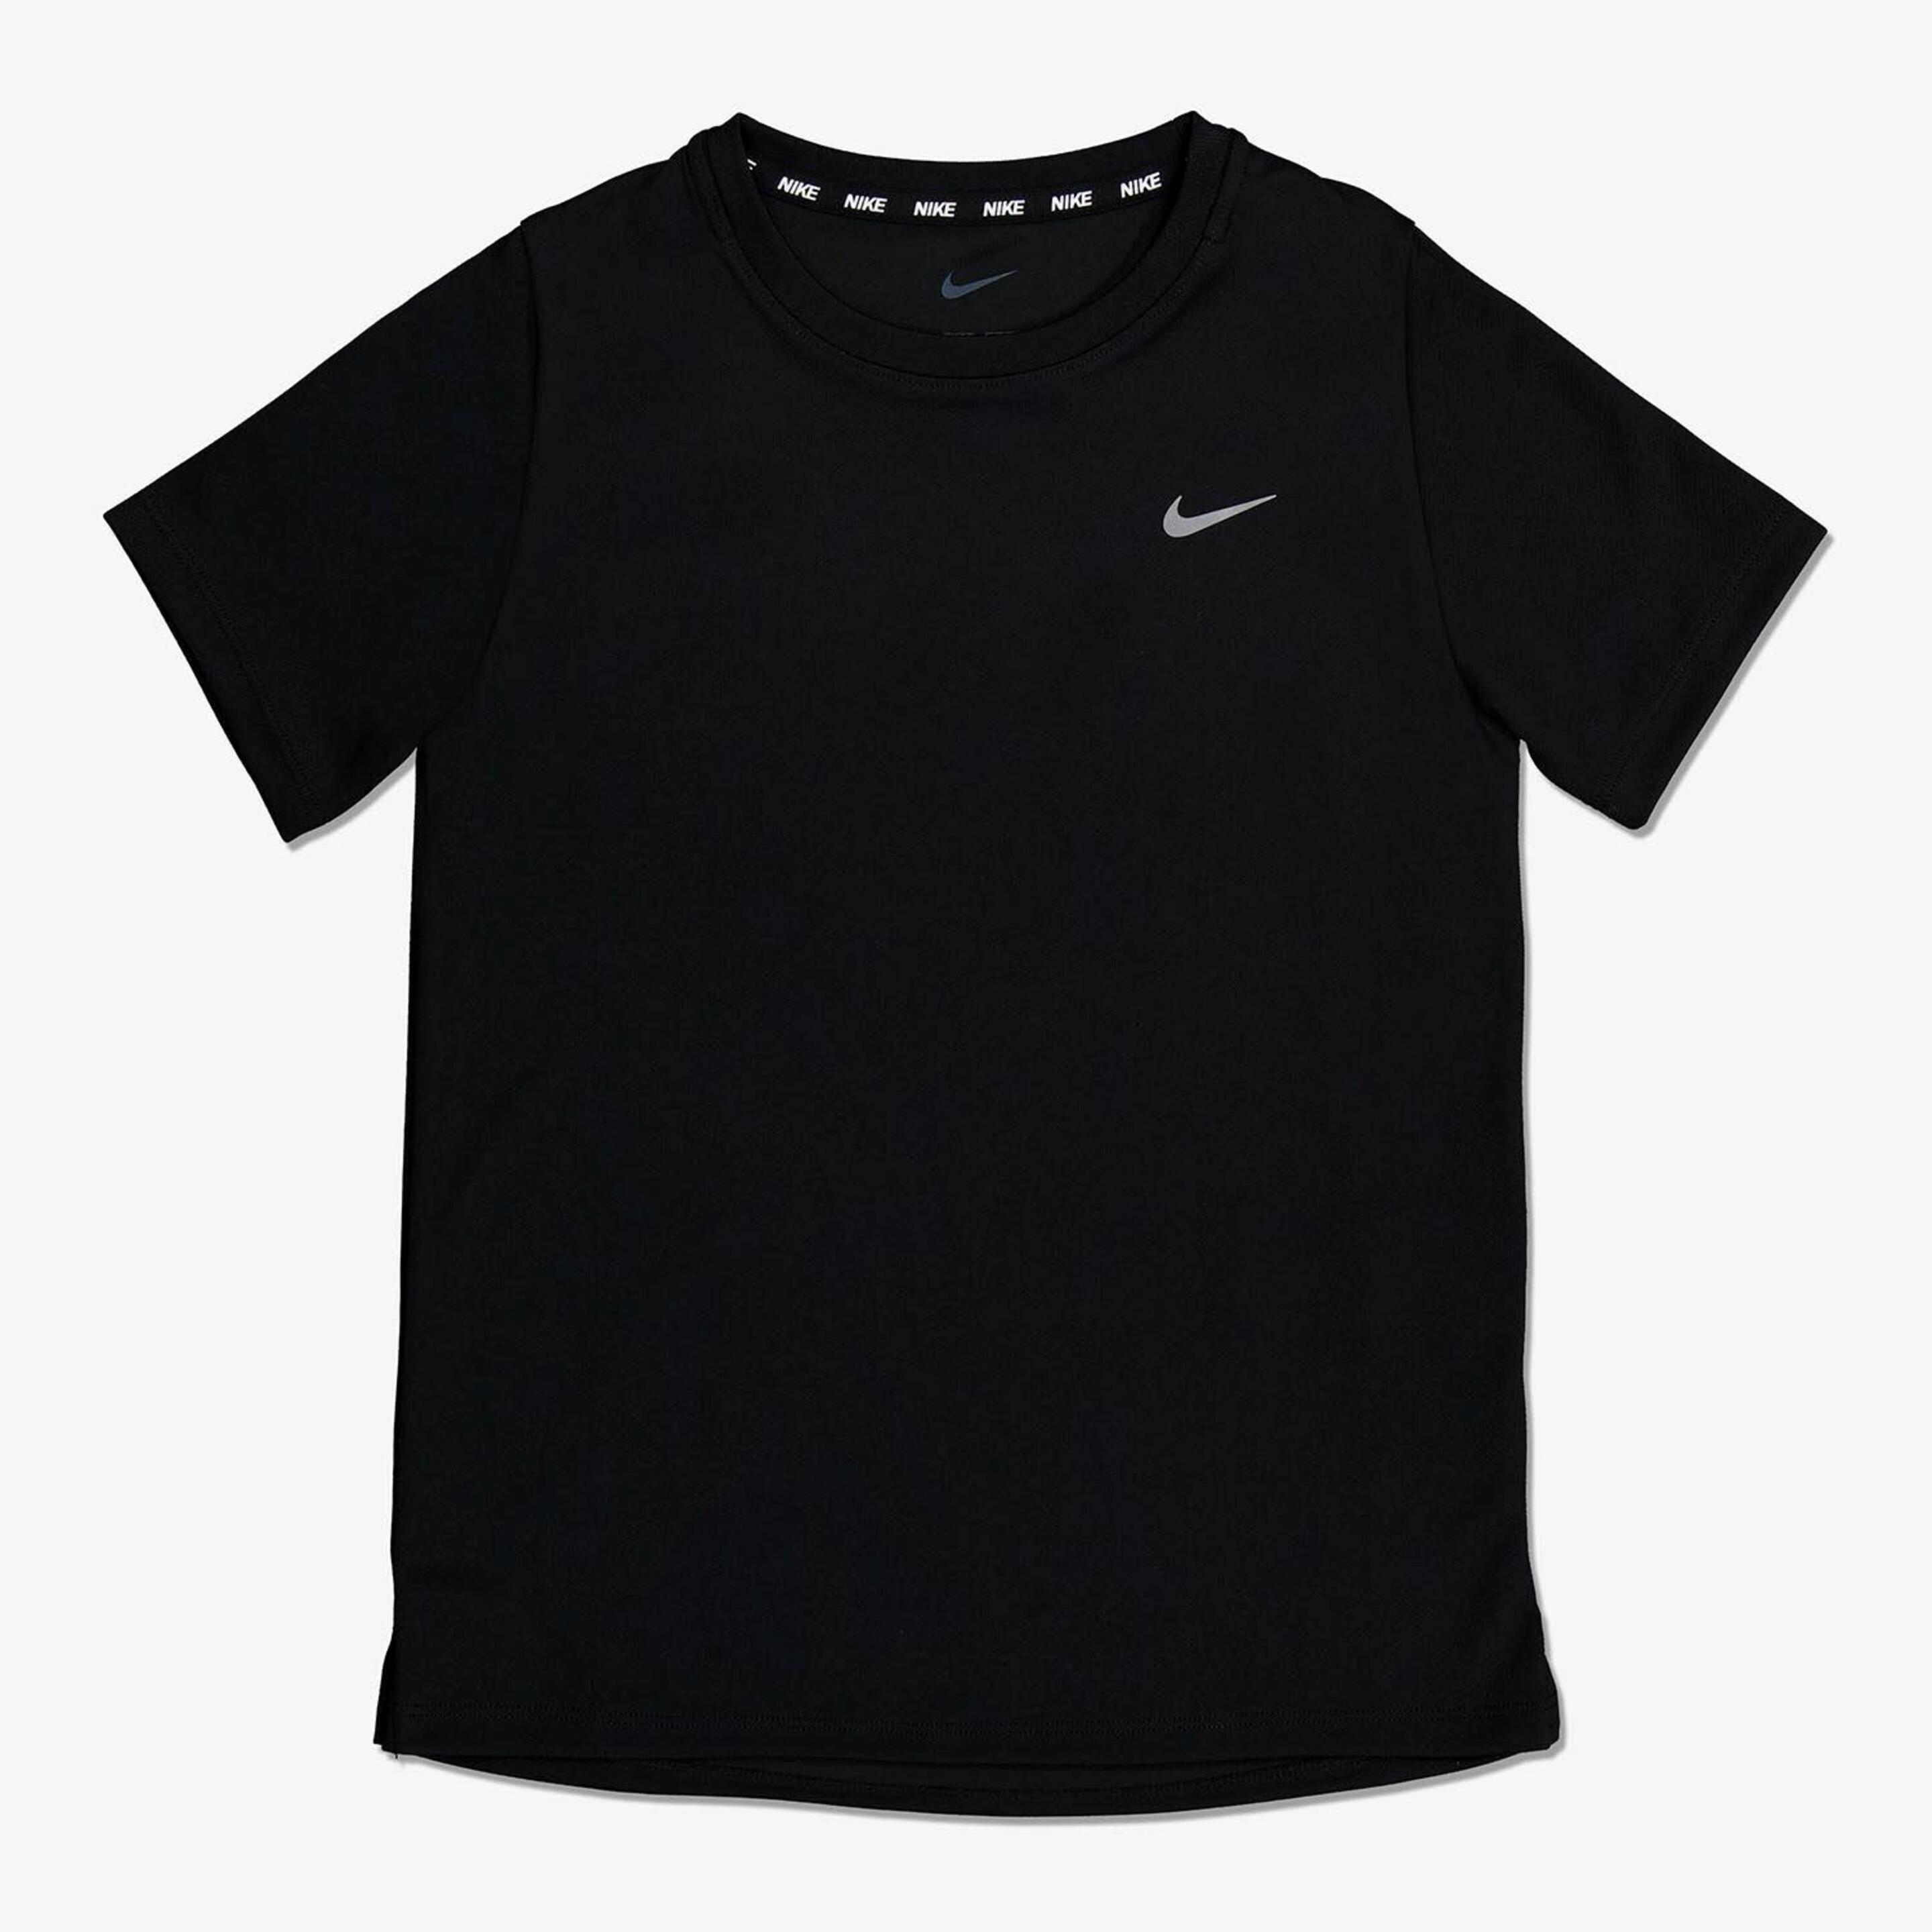 Nike Swoosh - negro - Camiseta Running Niño